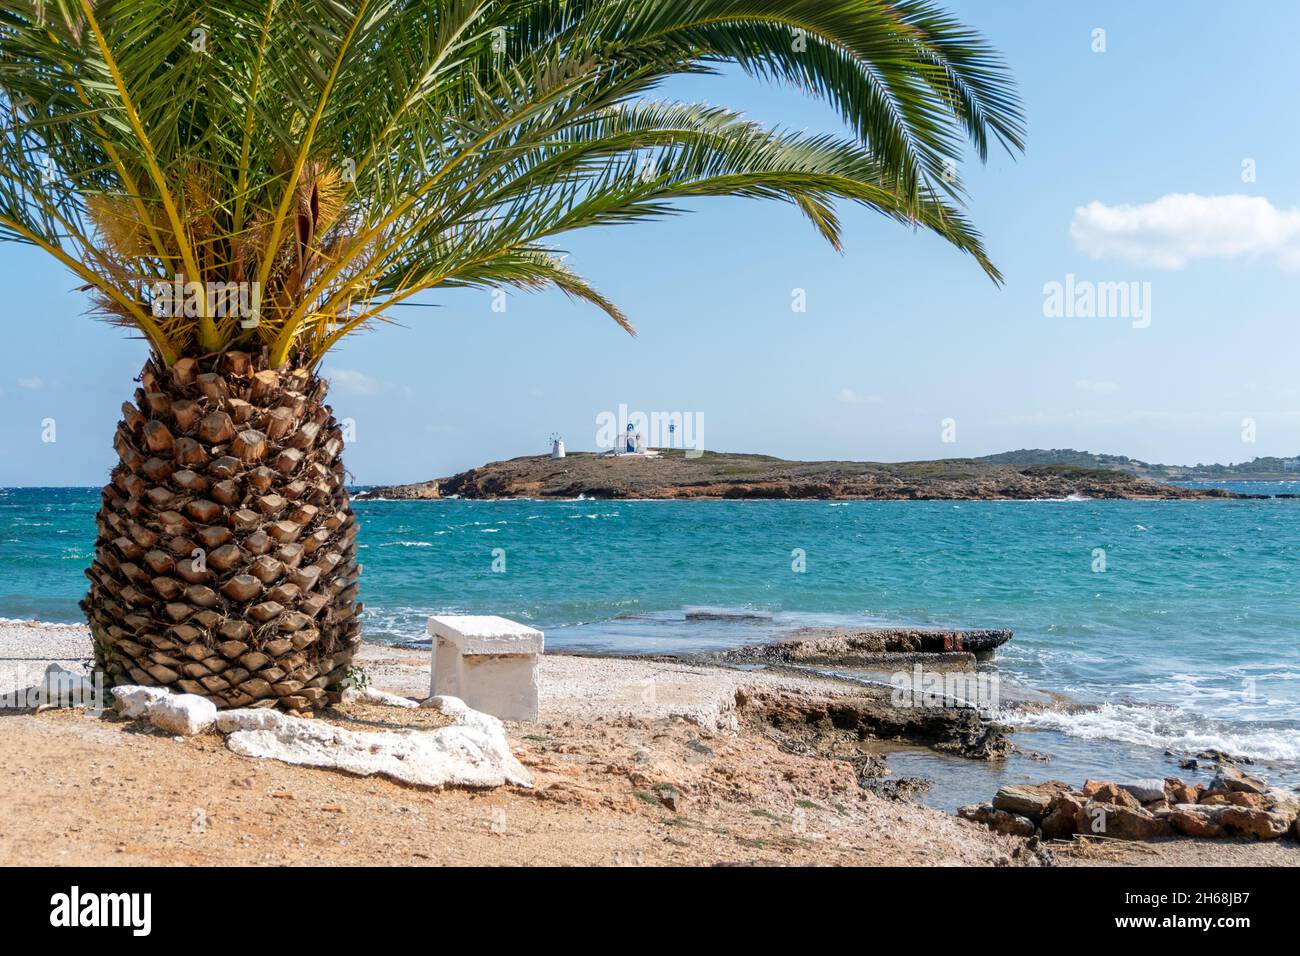 Griechische Ägäis mit einer Palme und einer kleinen Insel mit einer orthodoxen Kirche. Schönes landschaftlich schönes Reiseziel in Südeuropa. Stockfoto